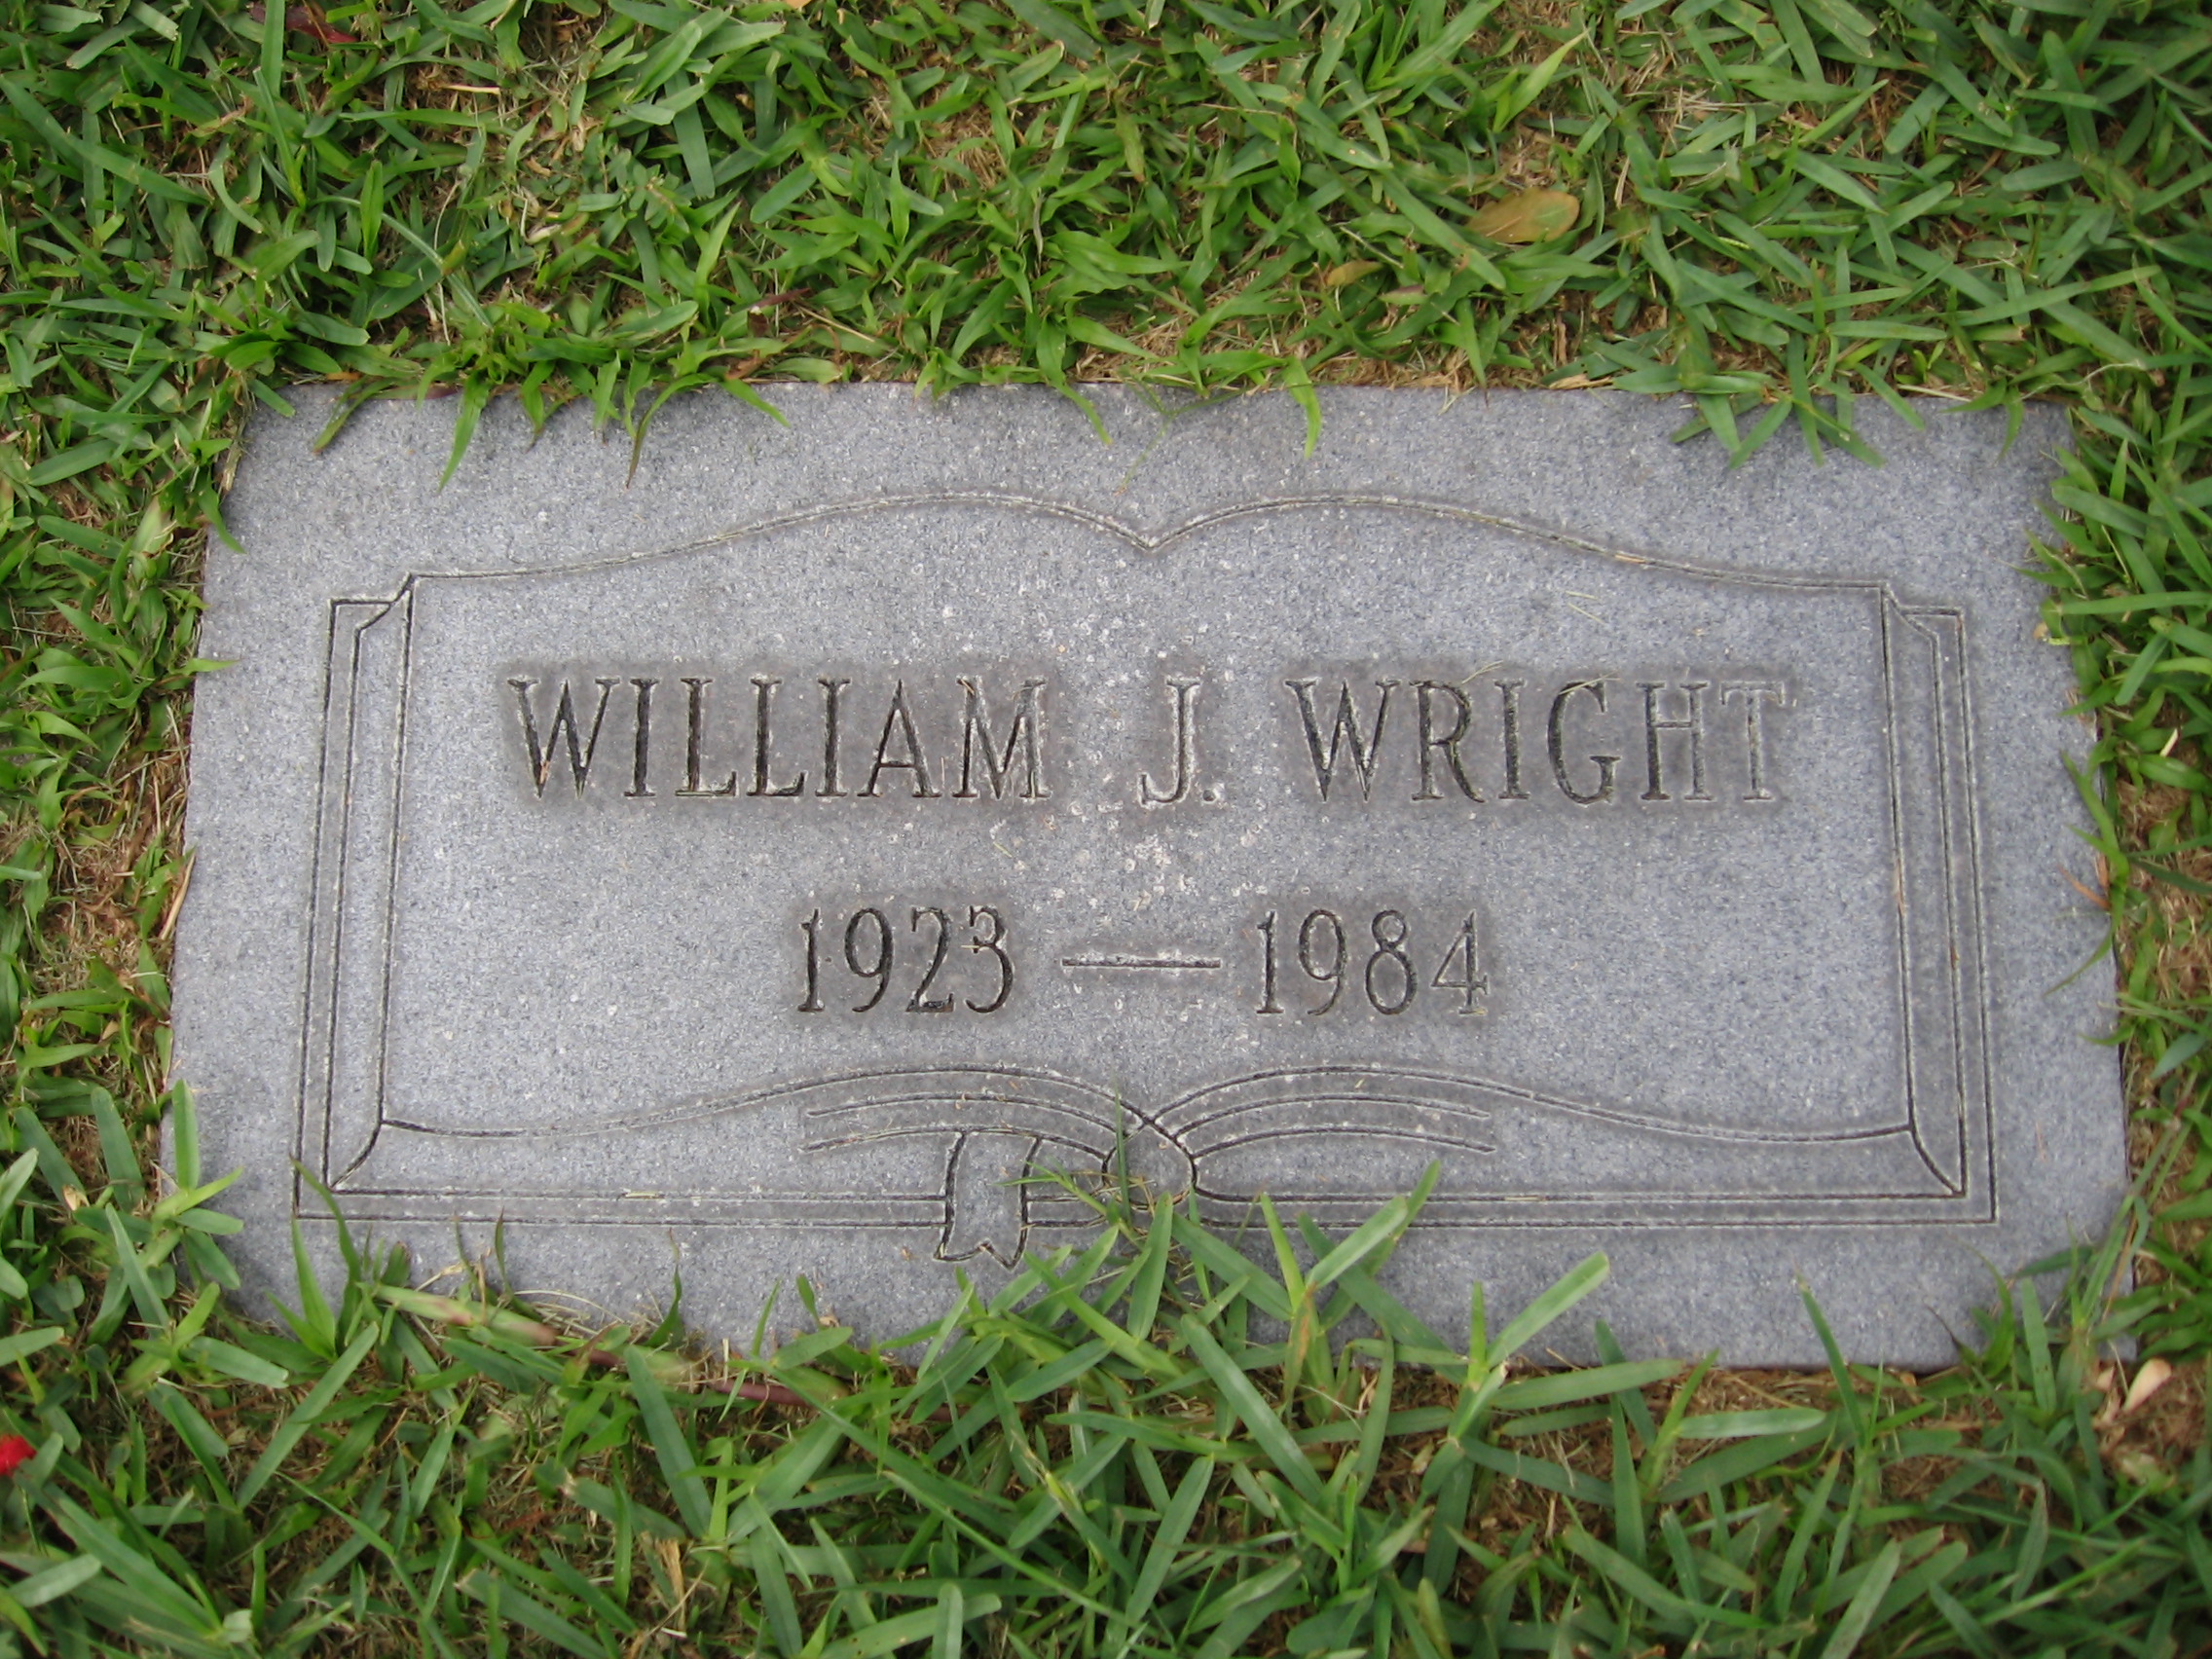 William J Wright